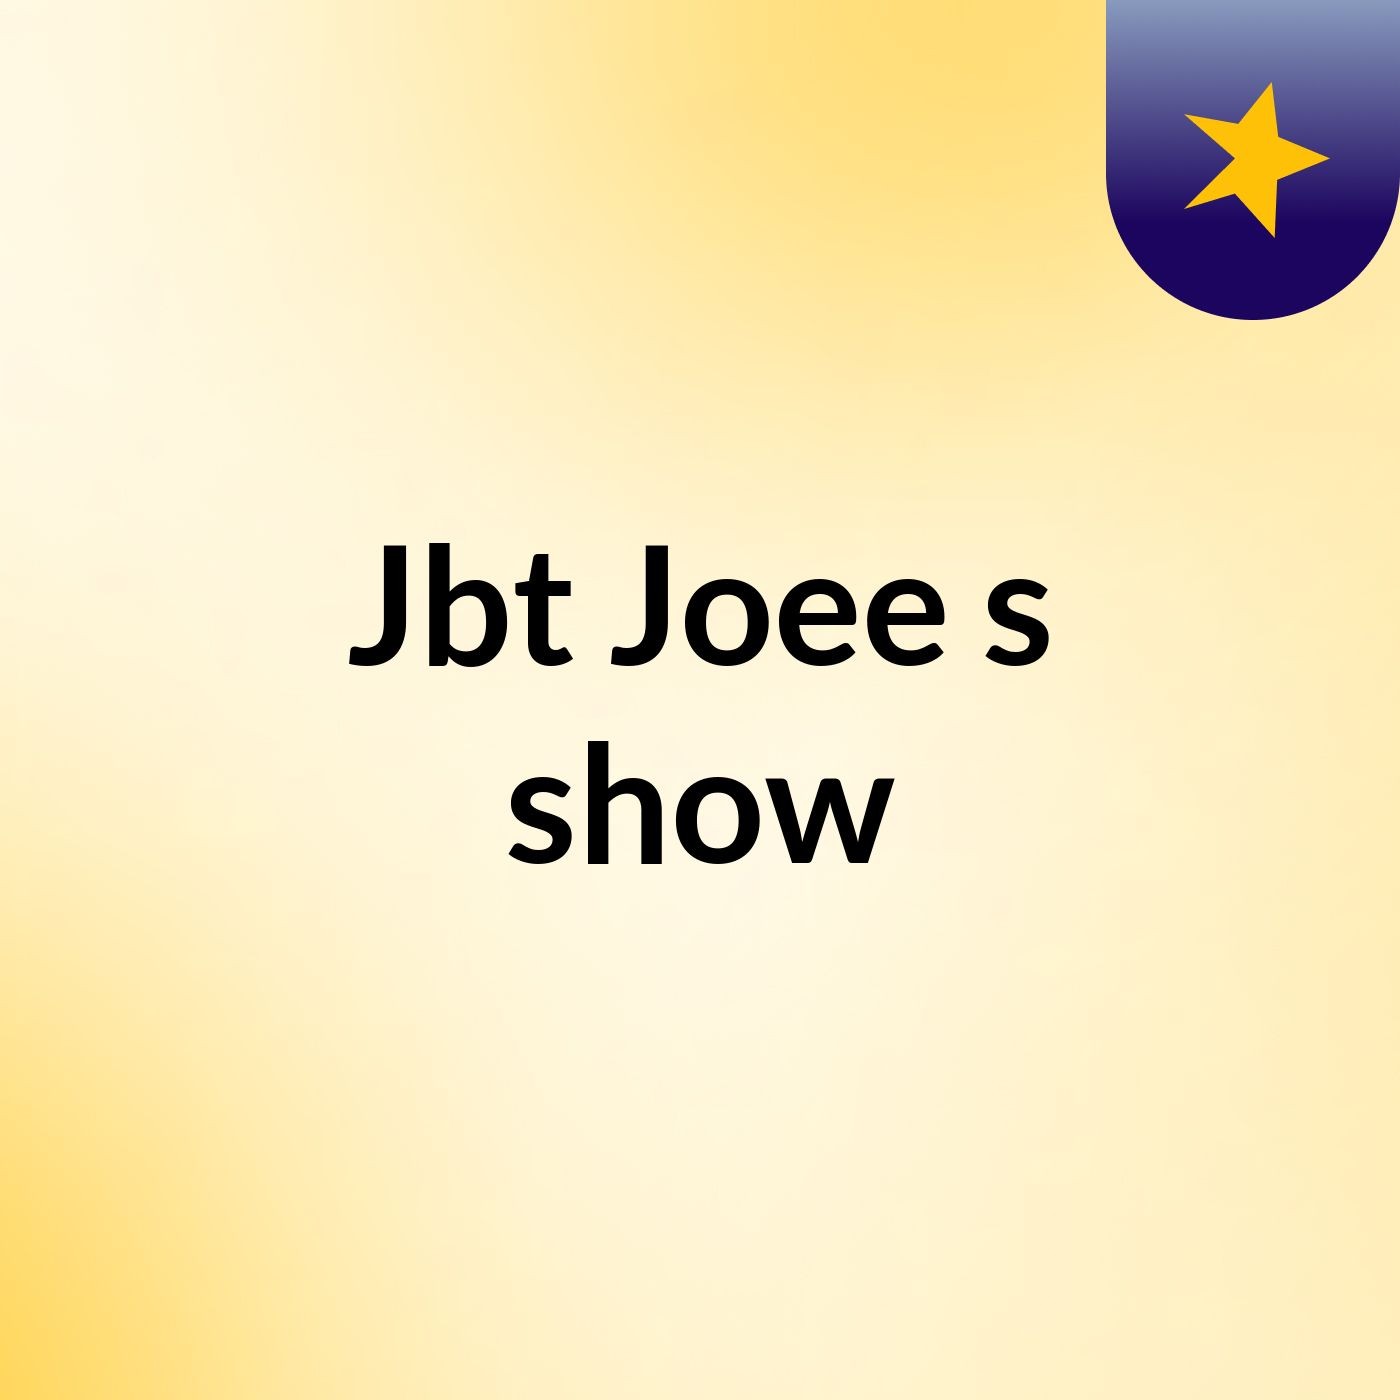 Jbt Joee's show:Jbt Joee